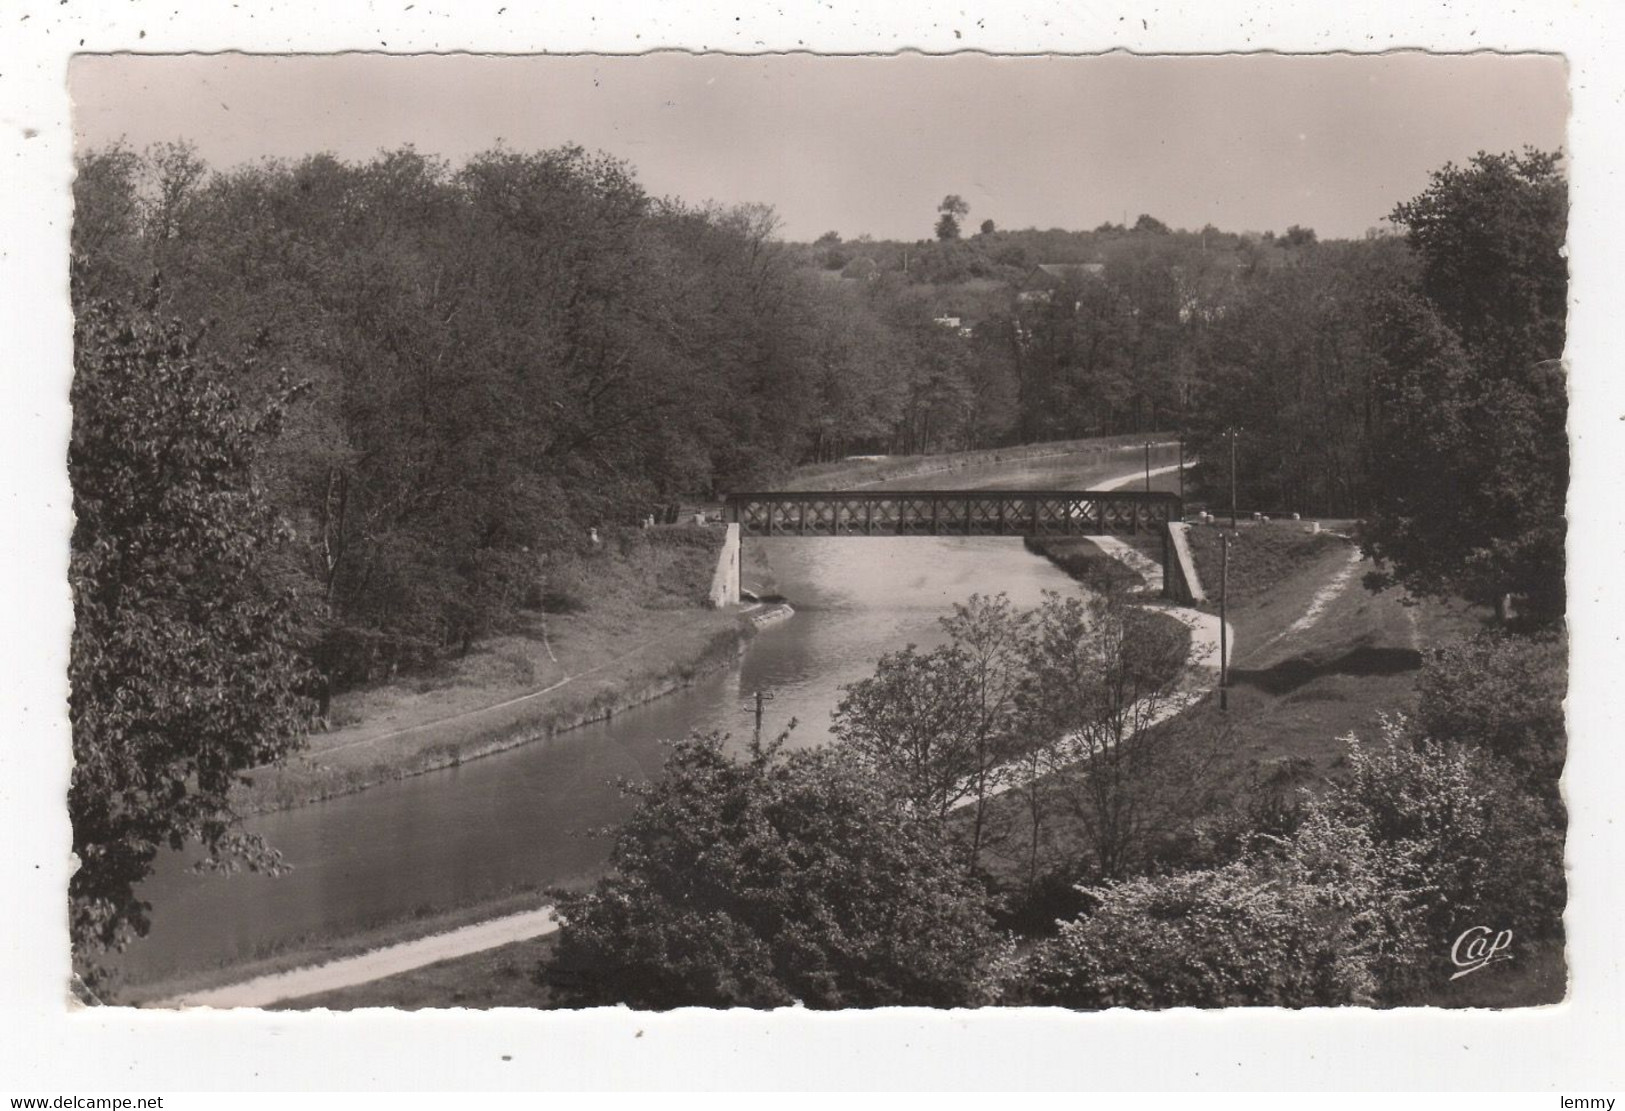 45 - BRIARE -   VUE PLONGEANTE SUR LE NOUVEAU CANAL - CPSM DENTELÉE 1954 - FORMAT CPA - Briare